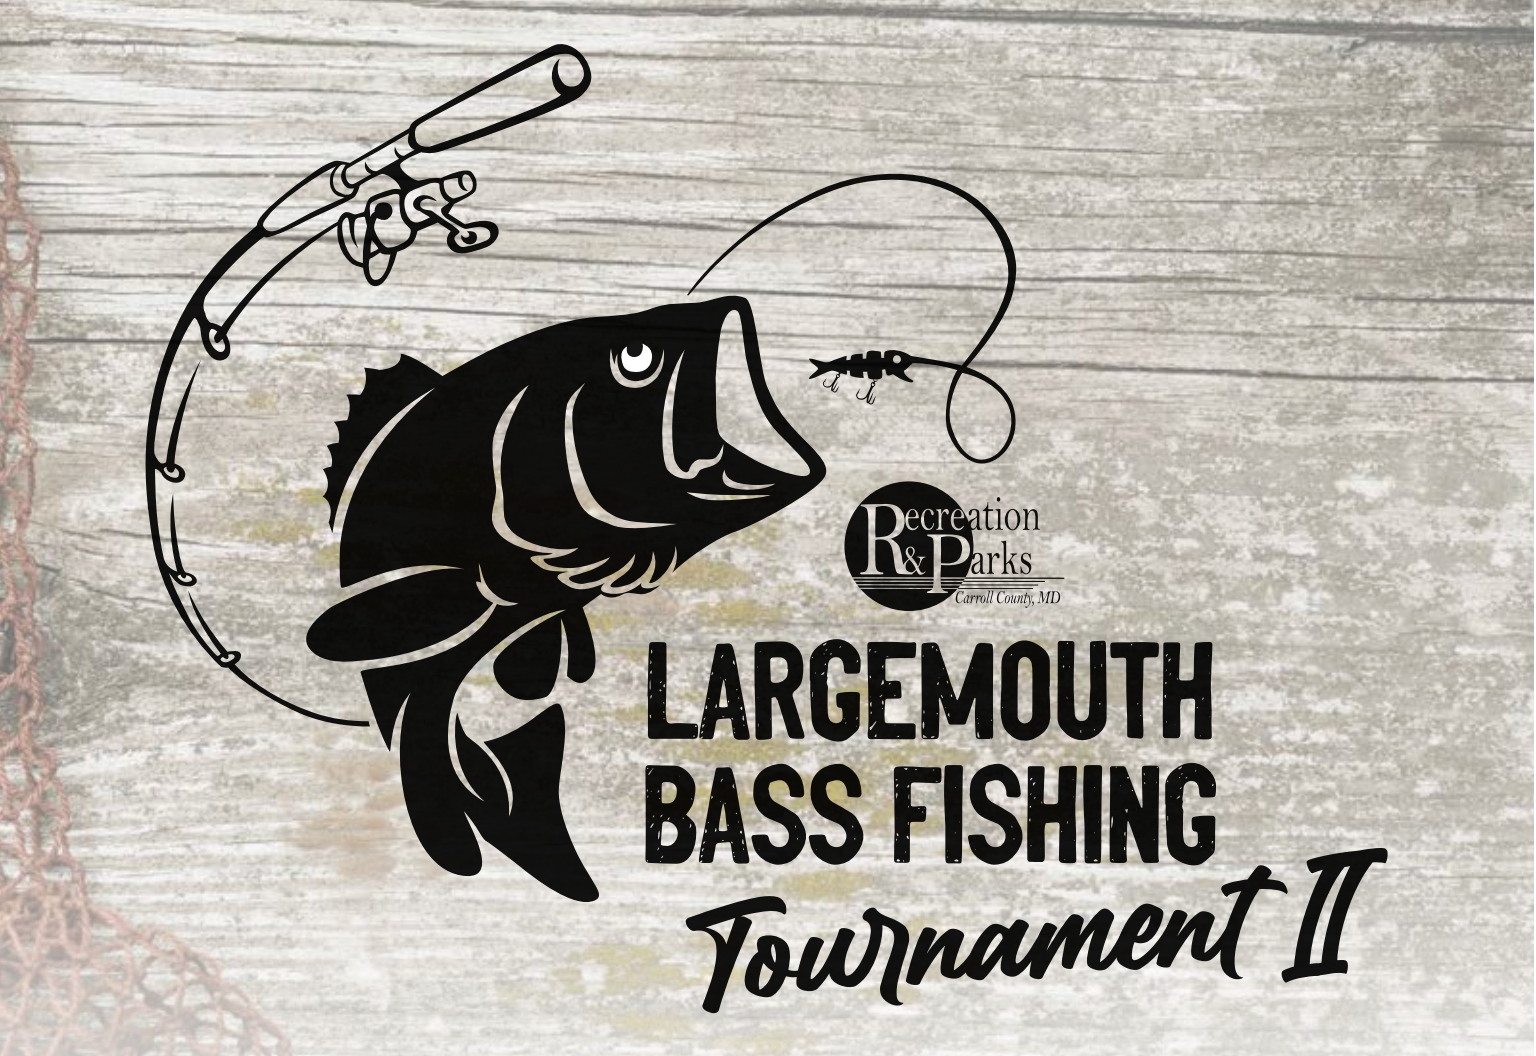 Largemouth Bass Fishing Tournament II